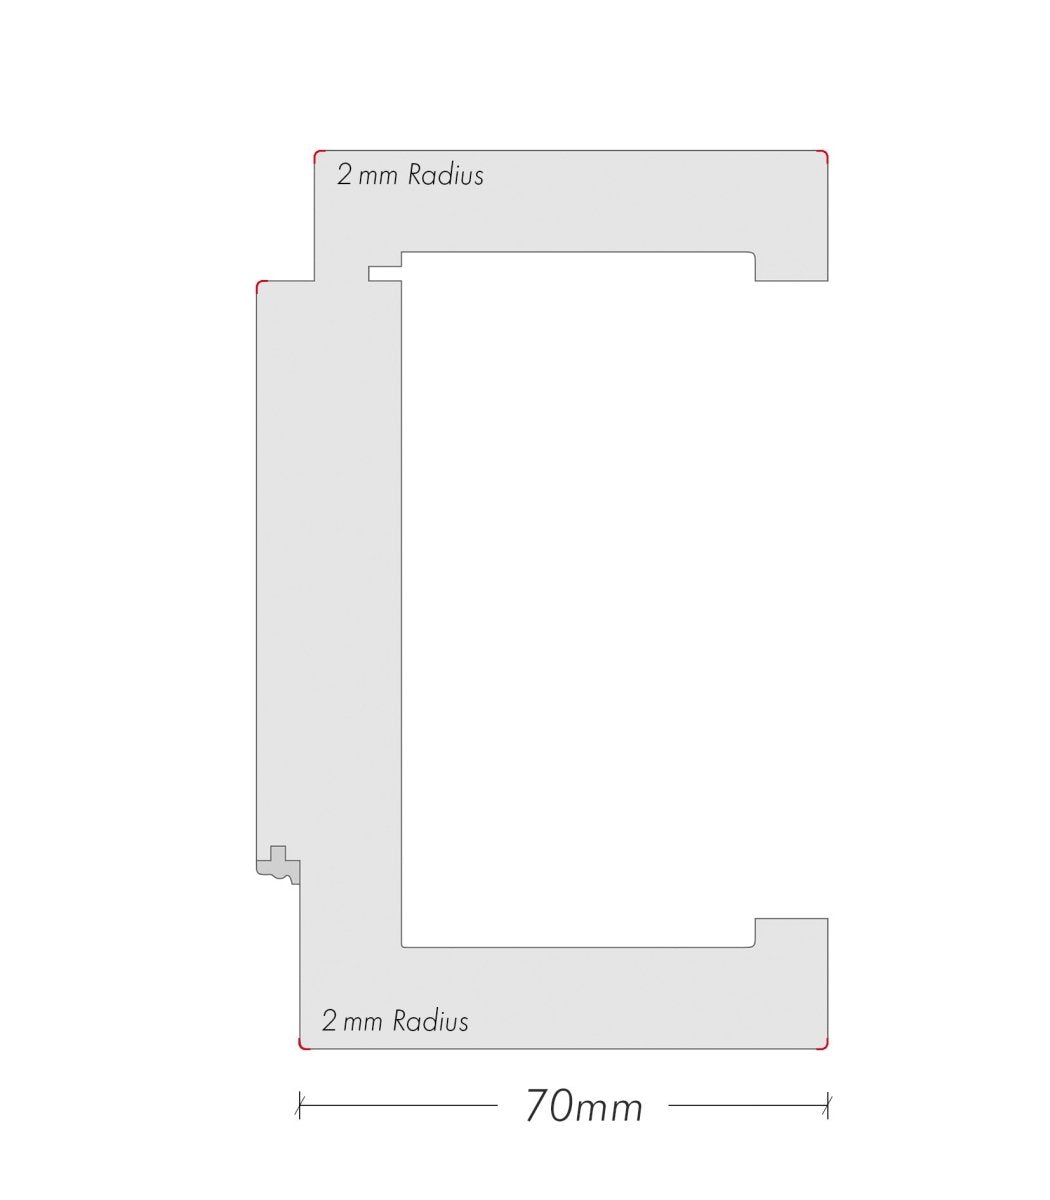 Tür mit Zarge Boho G7 Weißlack RAL 9003 Design-Innentür - Meine Tür